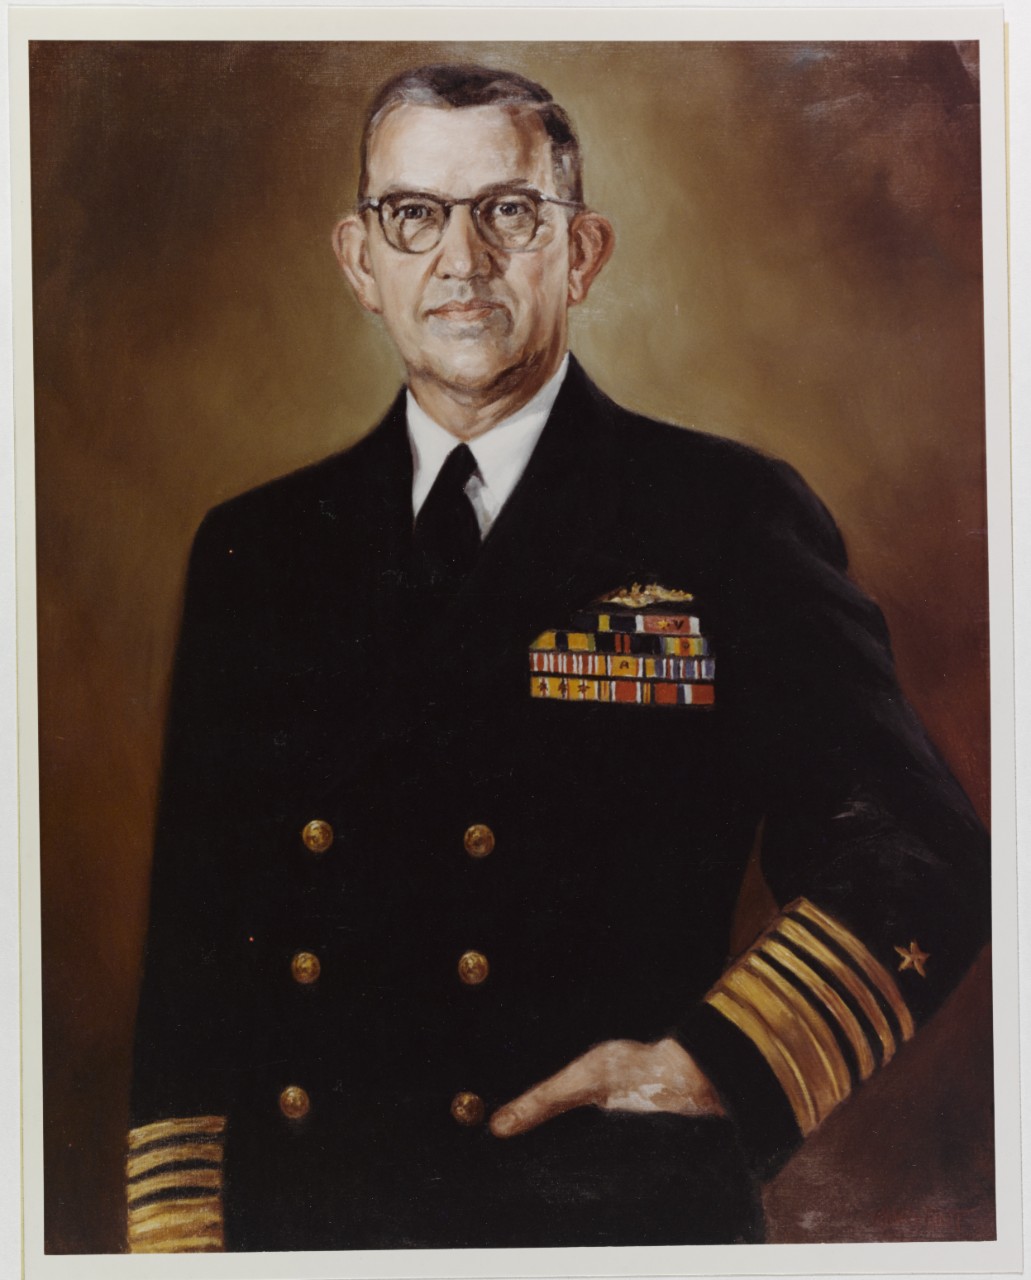 Admiral Louis Denfeld, USN